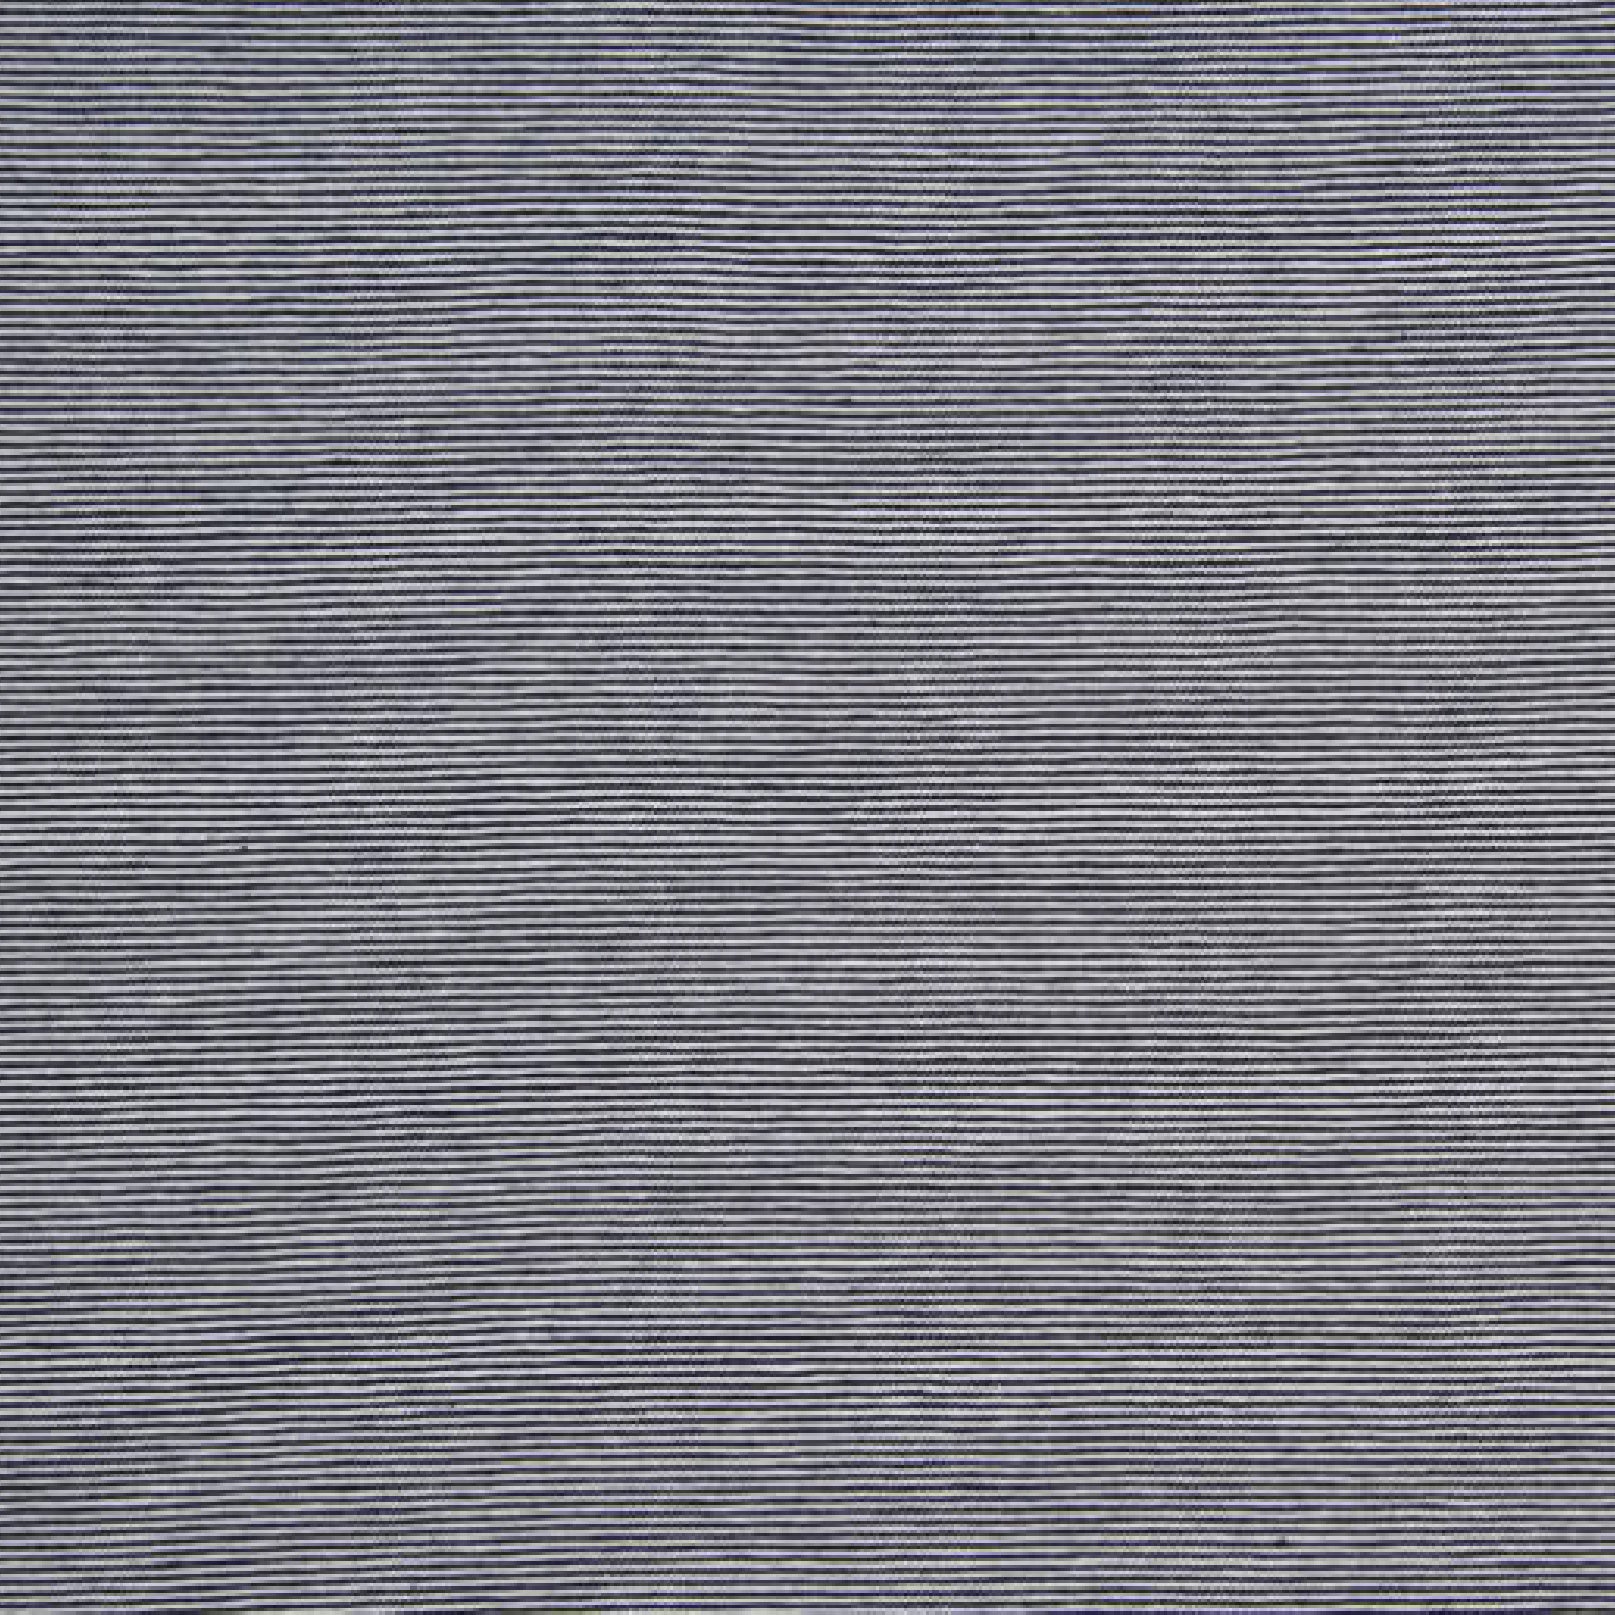 Ligné bleu marine et blanc 1 mm - Jersey ligné